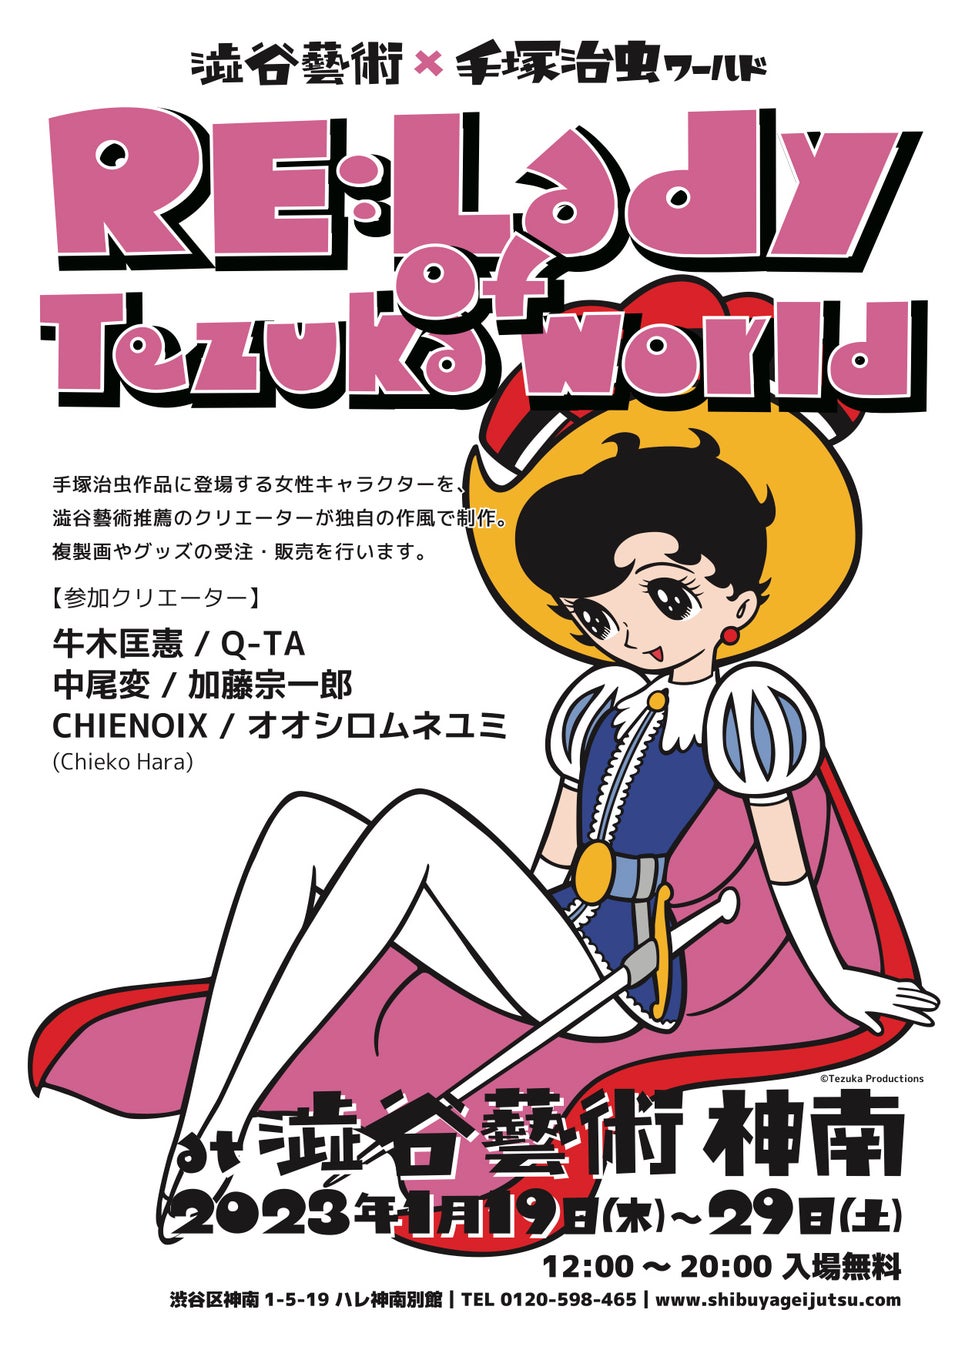 澁谷藝術×手塚治虫ワールドによるコラボ「RE:Lady of Tezuka world」1月19日より開催